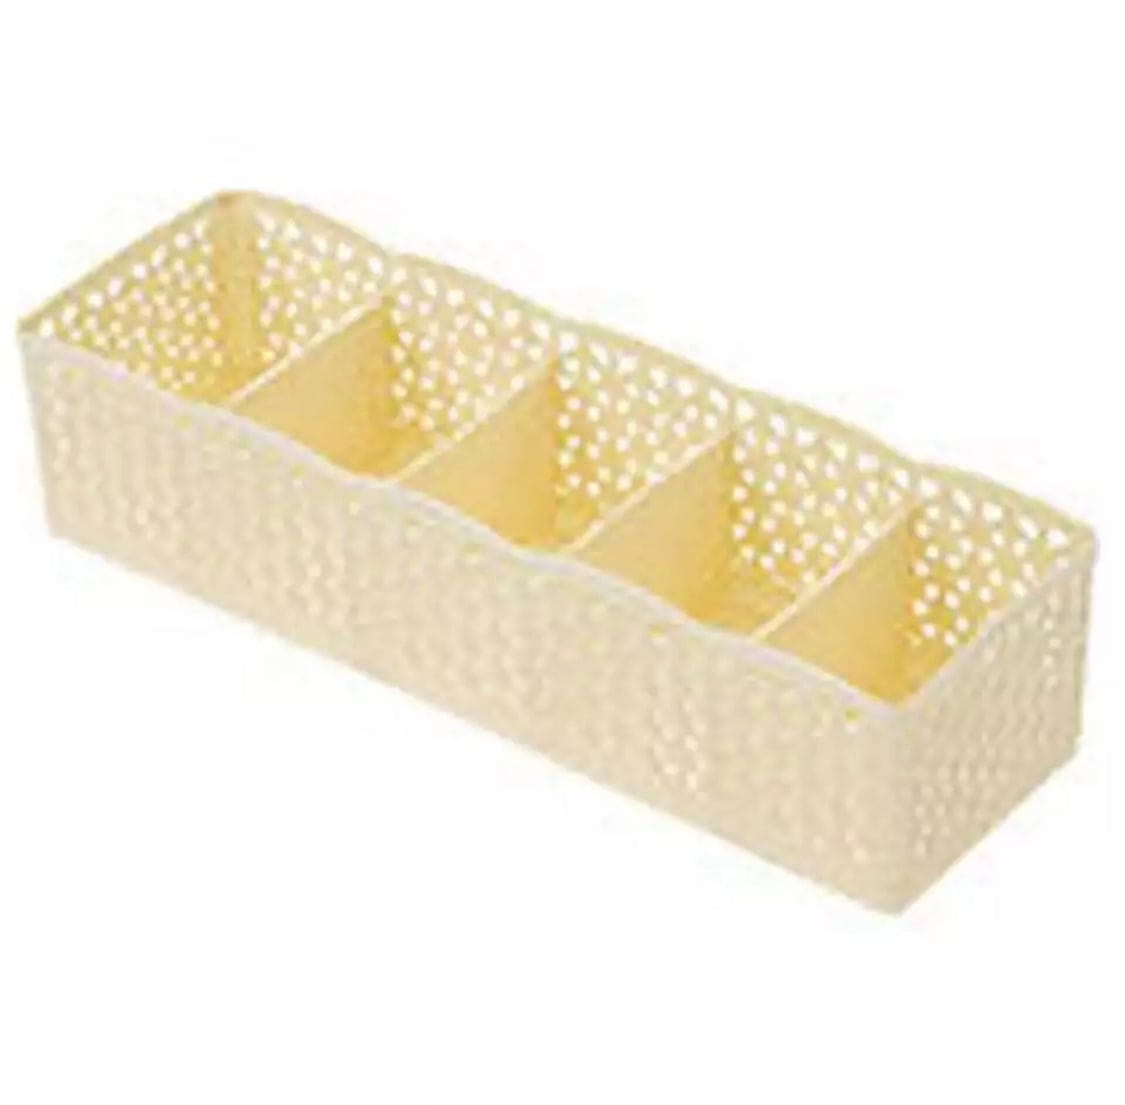 5 Grid Multipurpose Drawer Organizer, Attractive 5-Grid Plastic Storage Box, Dresser Drawer Divider Basket Bins